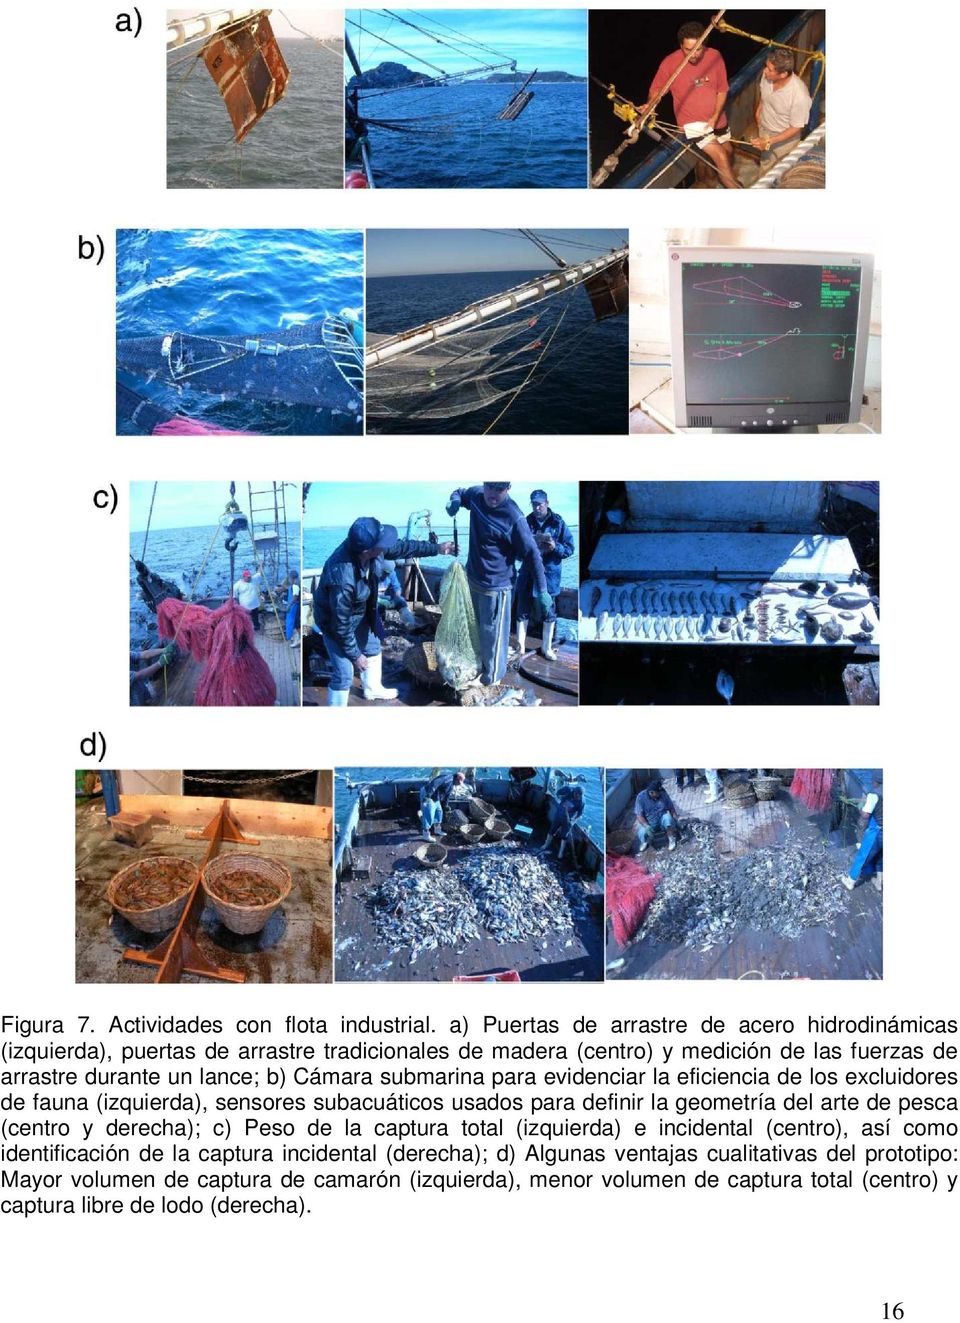 Cámara submarina para evidenciar la eficiencia de los excluidores de fauna (izquierda), sensores subacuáticos usados para definir la geometría del arte de pesca (centro y